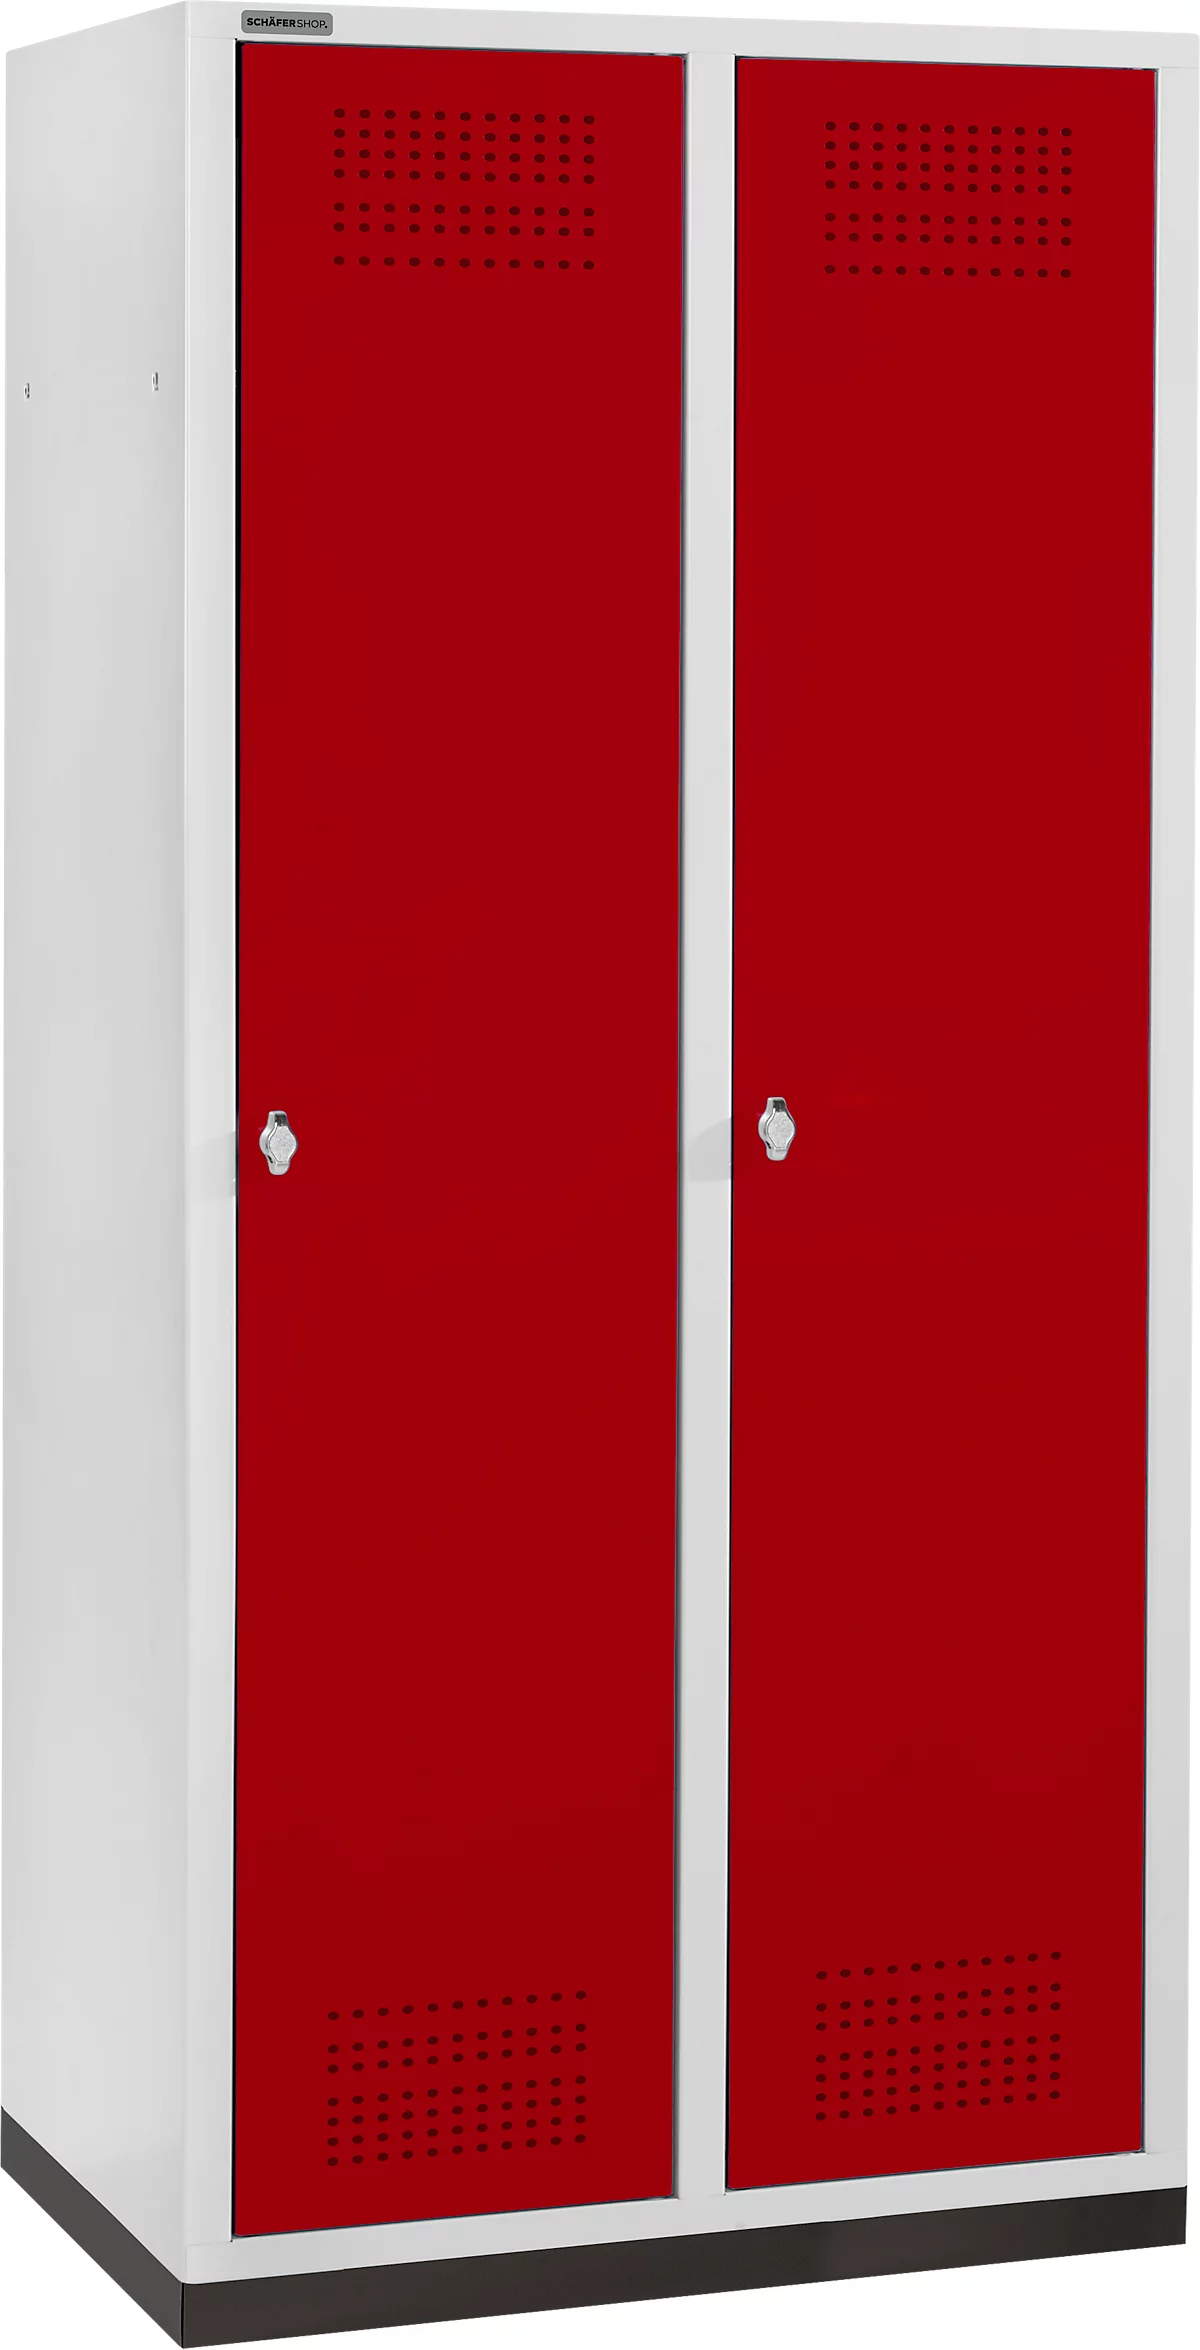 Schäfer Shop Genius Taquilla con zócalo, 2 compartimentos, anchura compartimento 400 mm, cierre de pasador giratorio de seguridad, gris luminoso/rojo rubí